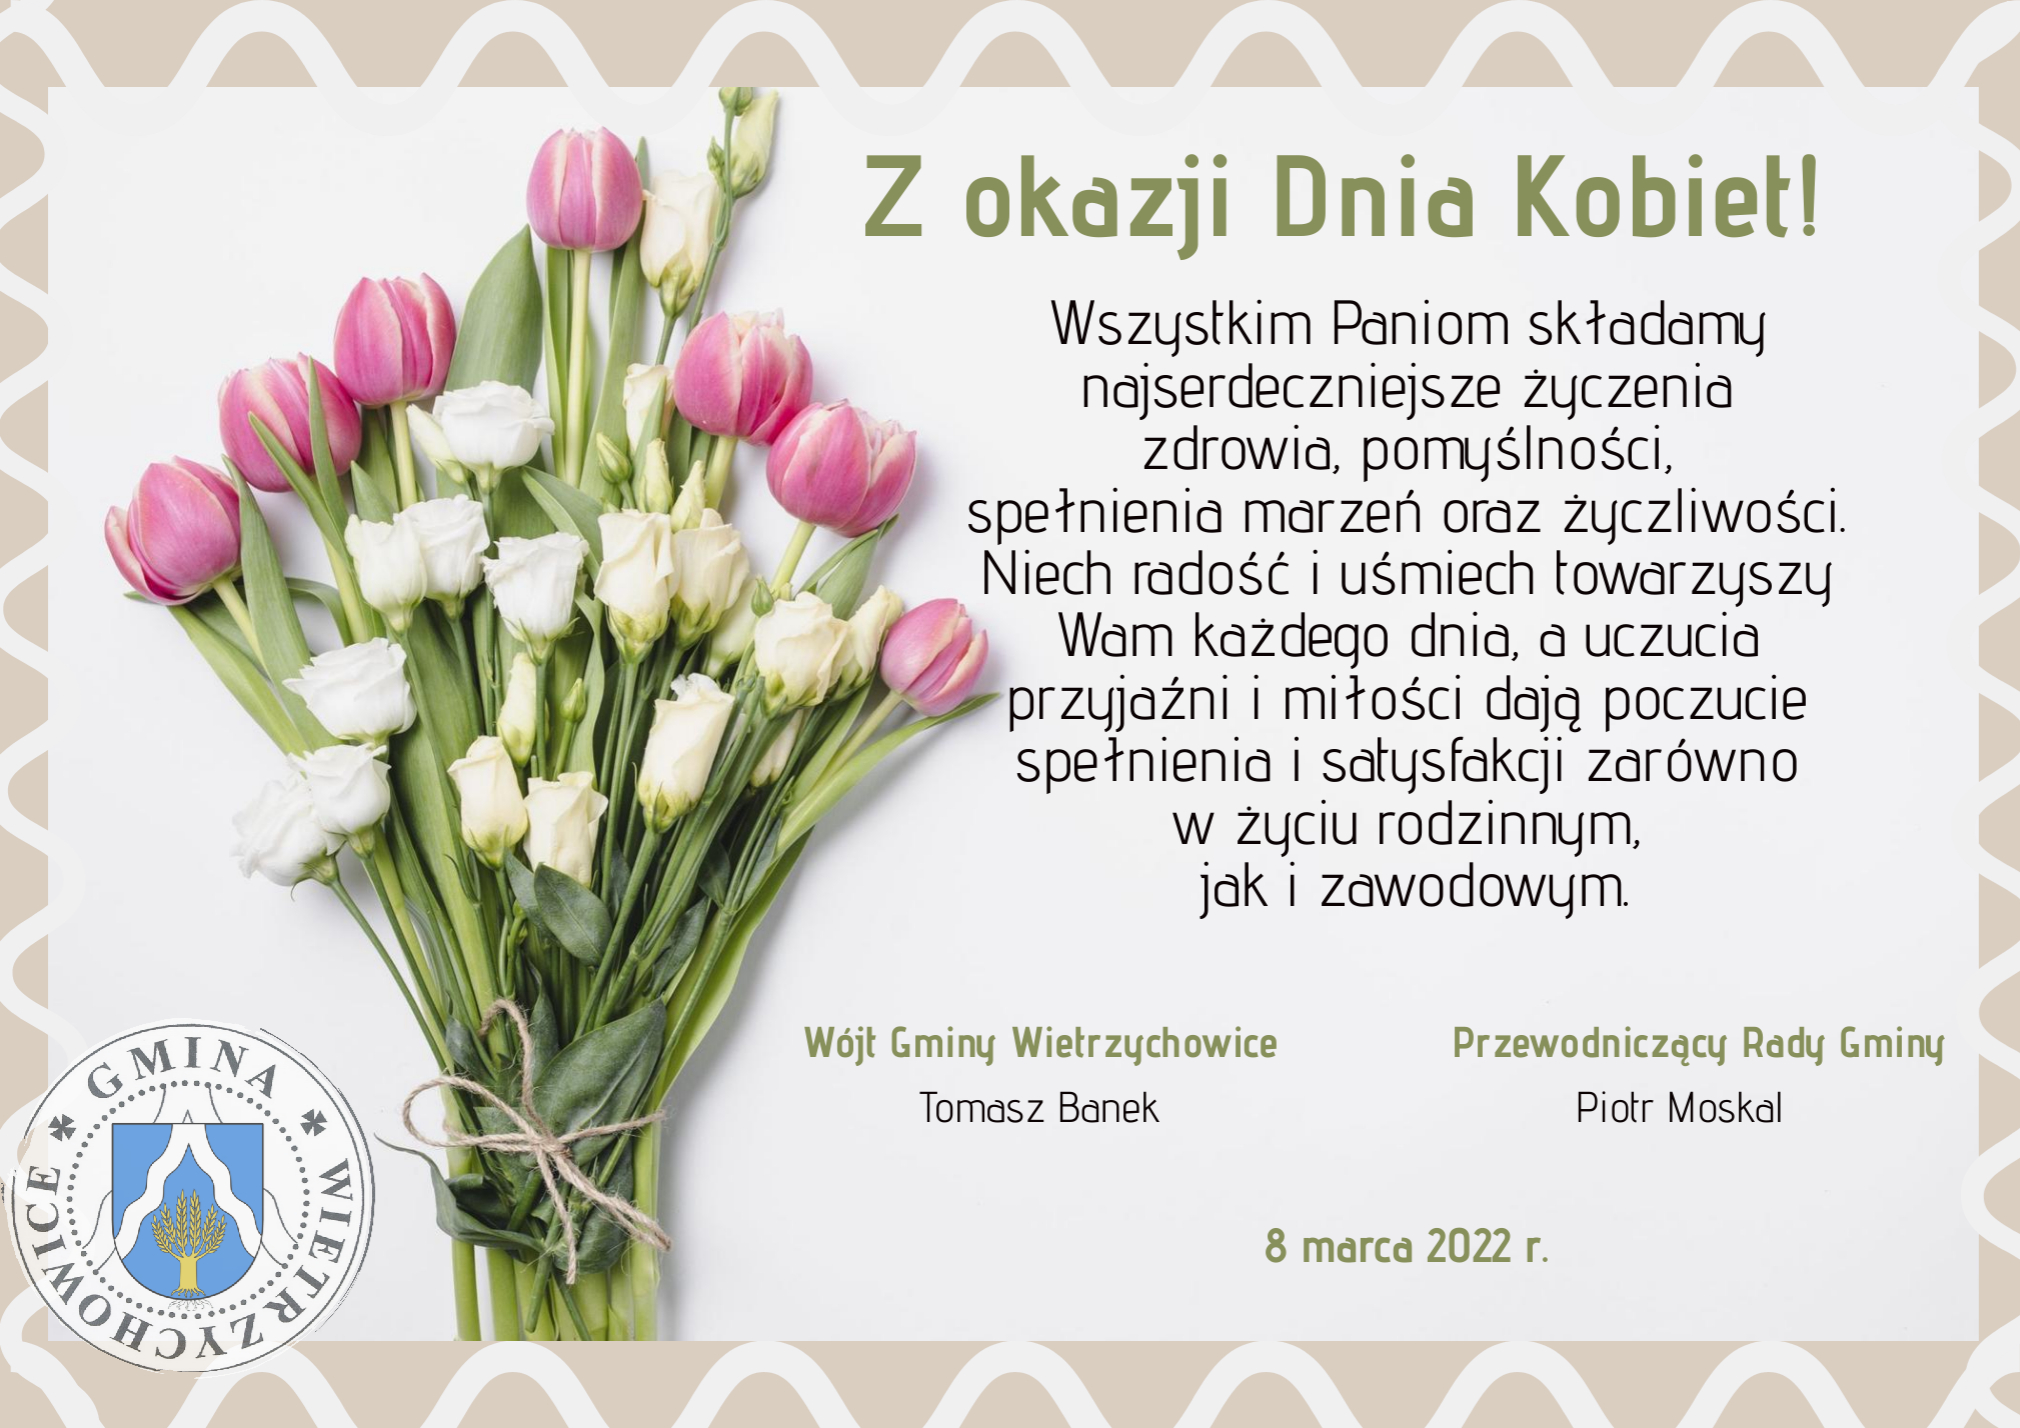 bukiet różowych tulipanów białych róż, po lewej stronie bukietu w dolnym rogu logo gminy Wietrzychowice. Po prawej stronie na jasnym tle życzenia.